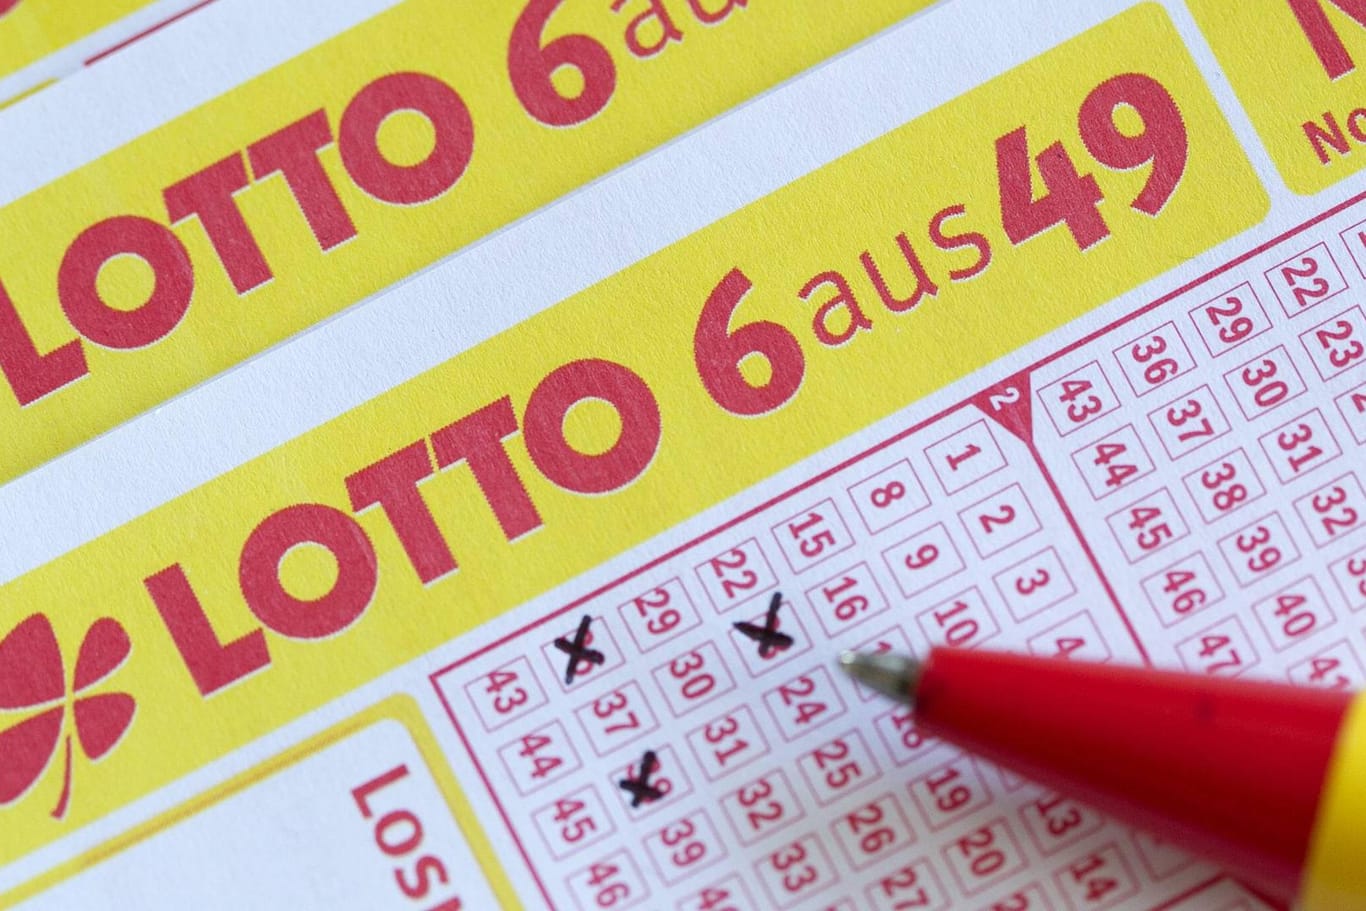 Lottoschein: Haben sie auf die richtigen Lottozahlen getippt?